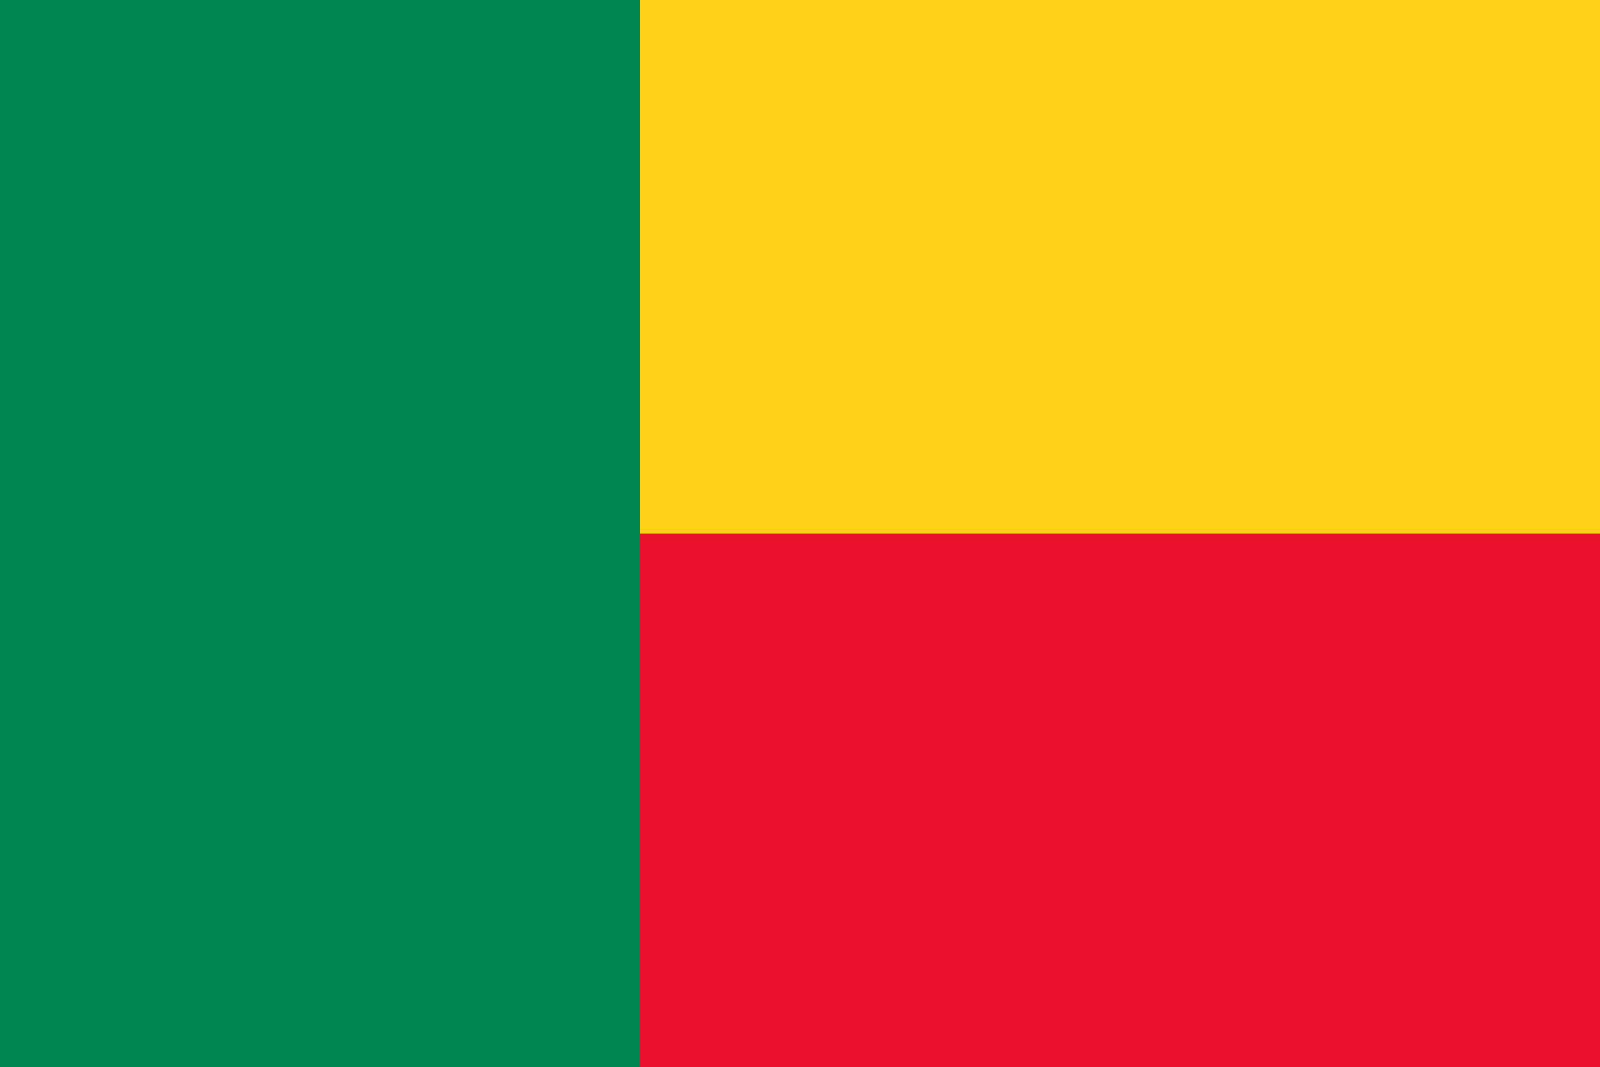 Beninese Flag